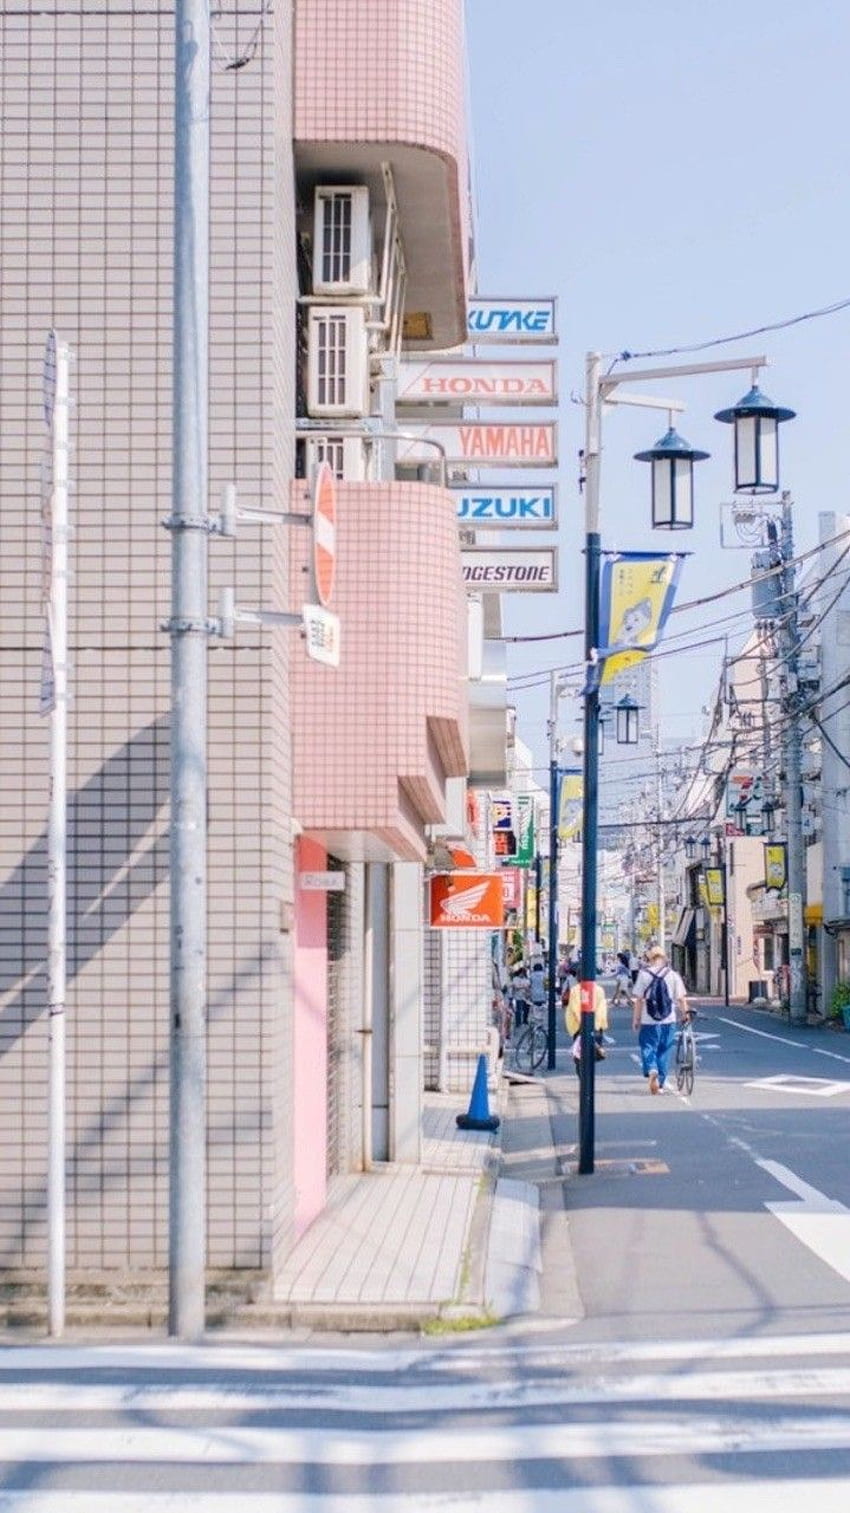 Vacanze e viaggi 에 있는 Quinny 님의 핀. 거리사진, 도쿄 일본, 배경, Estetica giapponese Sfondo del telefono HD